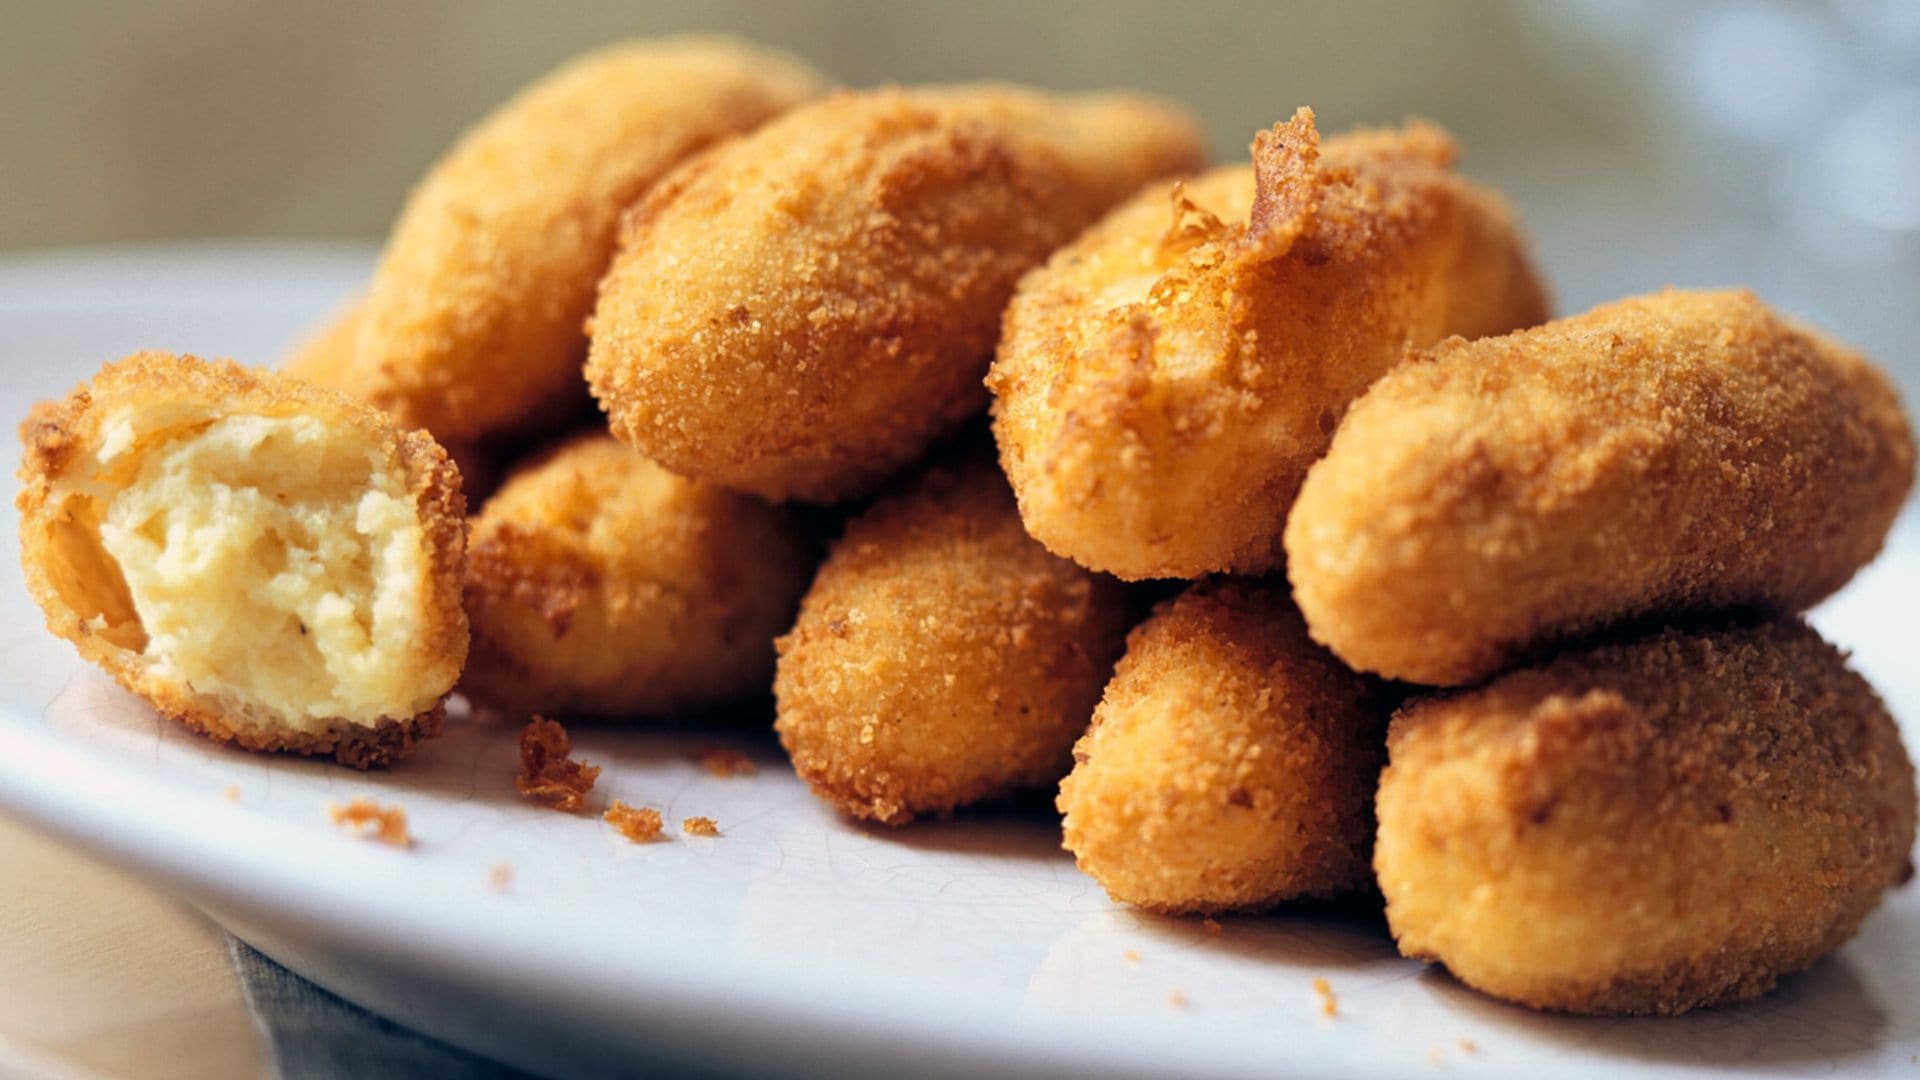 Croquetas de patata al estilo italiano: si comes una, ¡ya no podrás parar!